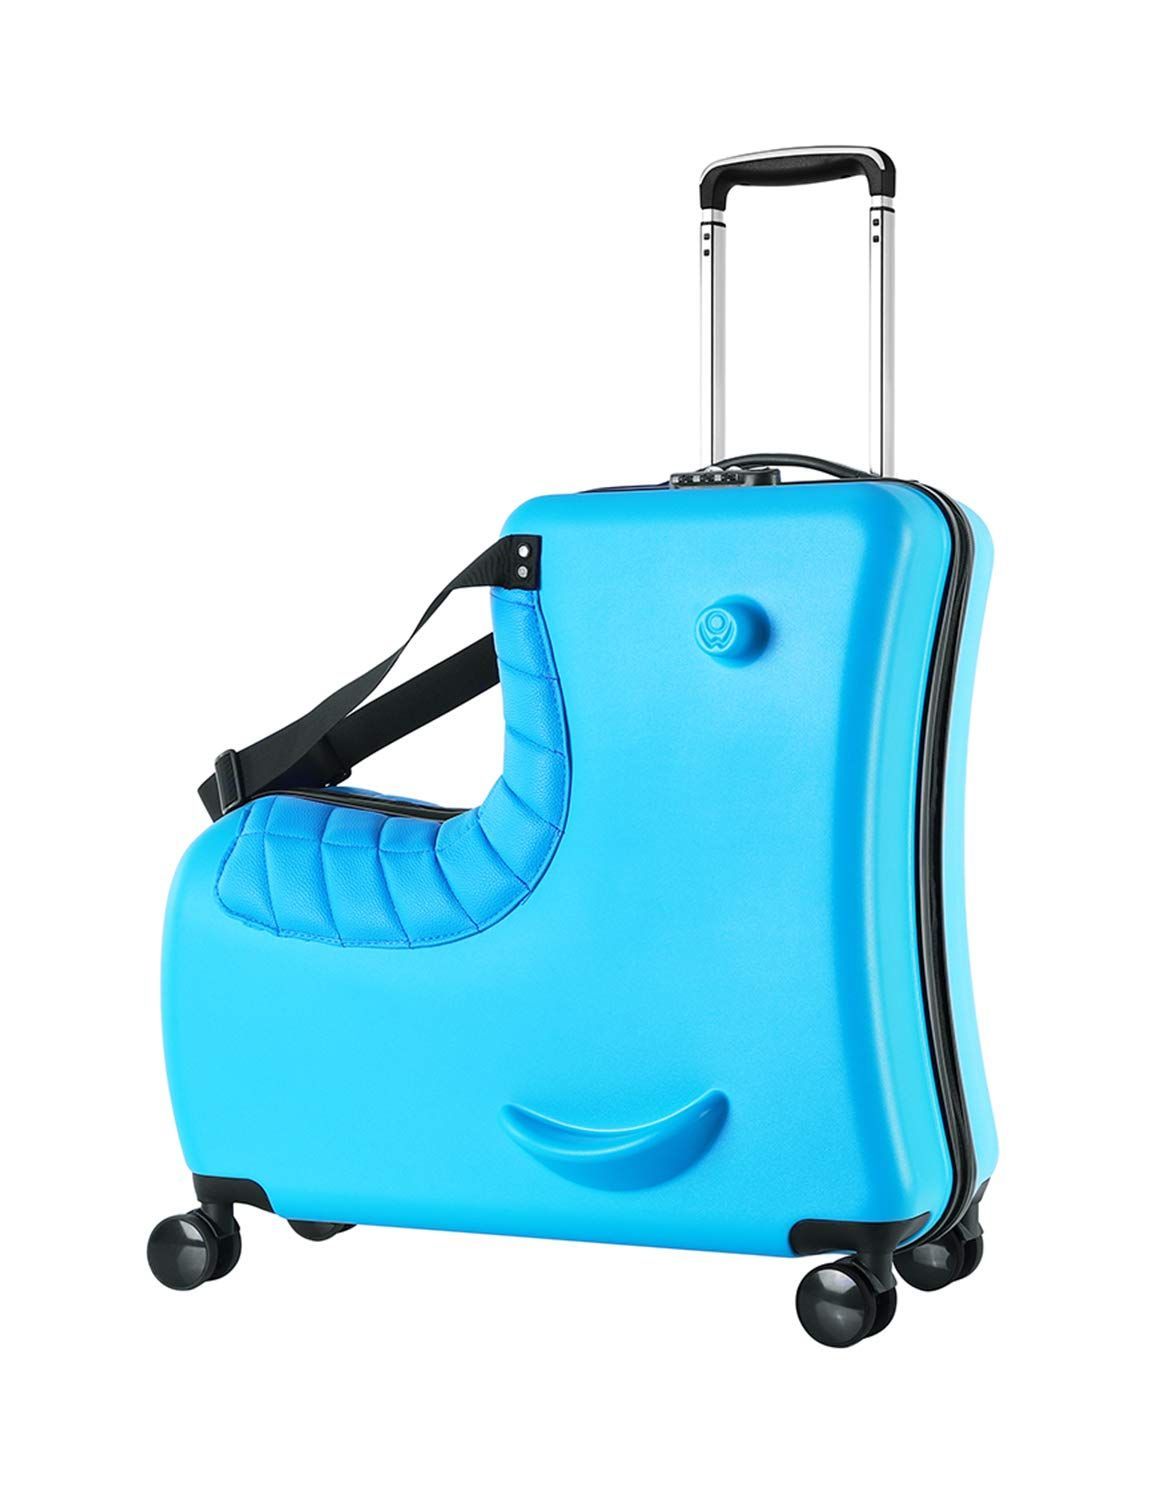 Neskatu] 子供が乗れるキャリーケース 子供が乗れるスーツケース 子供